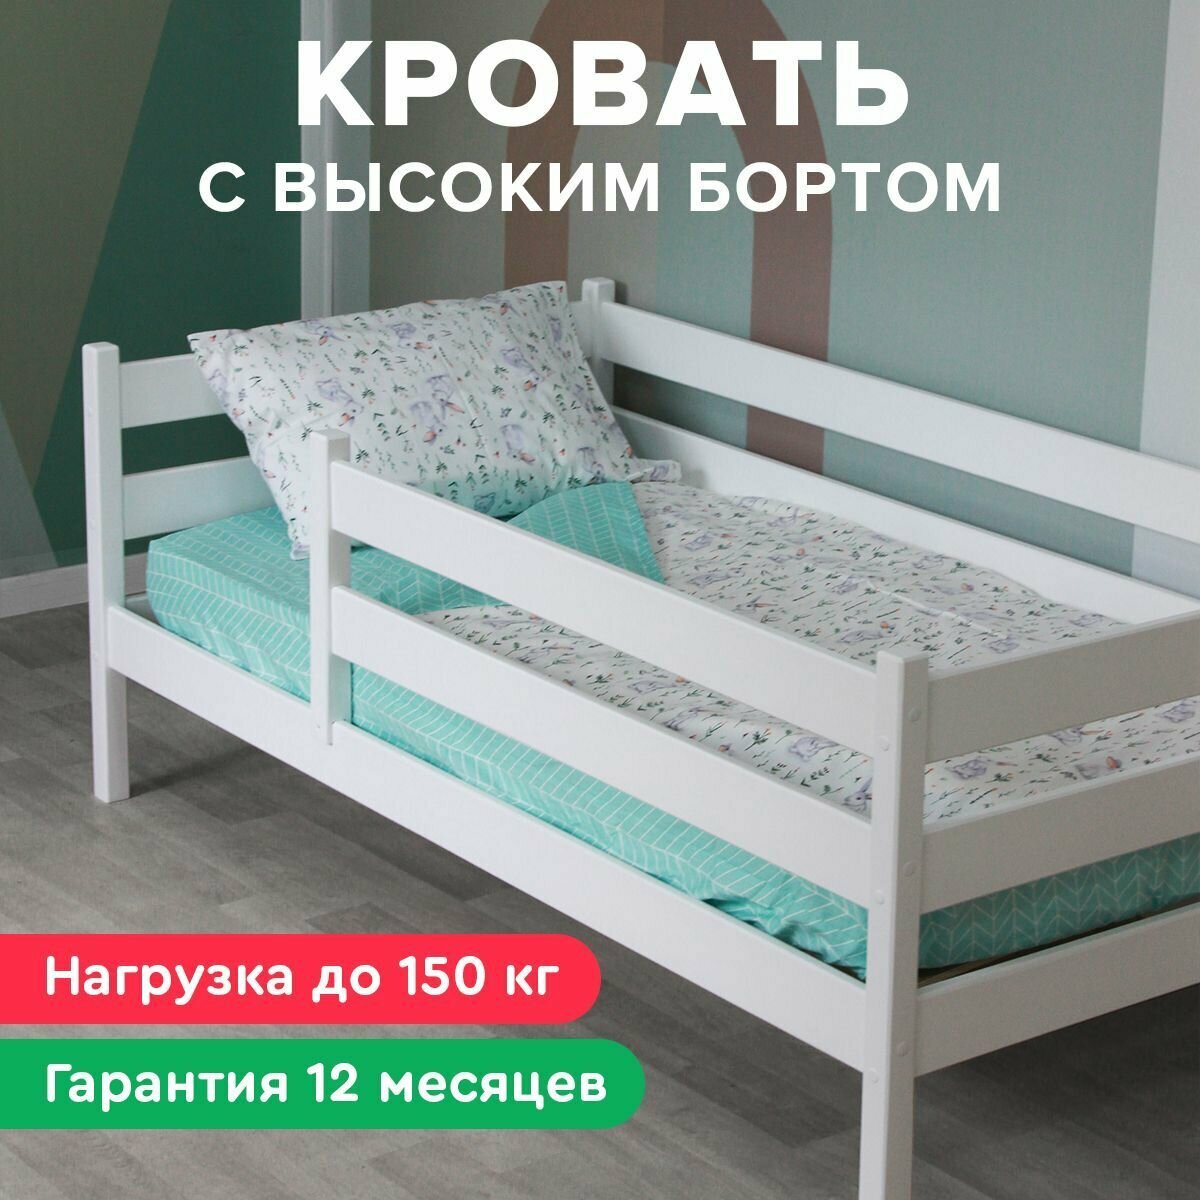 Детская кровать Шалун 160х80 со съемным бортом, белая, из березы